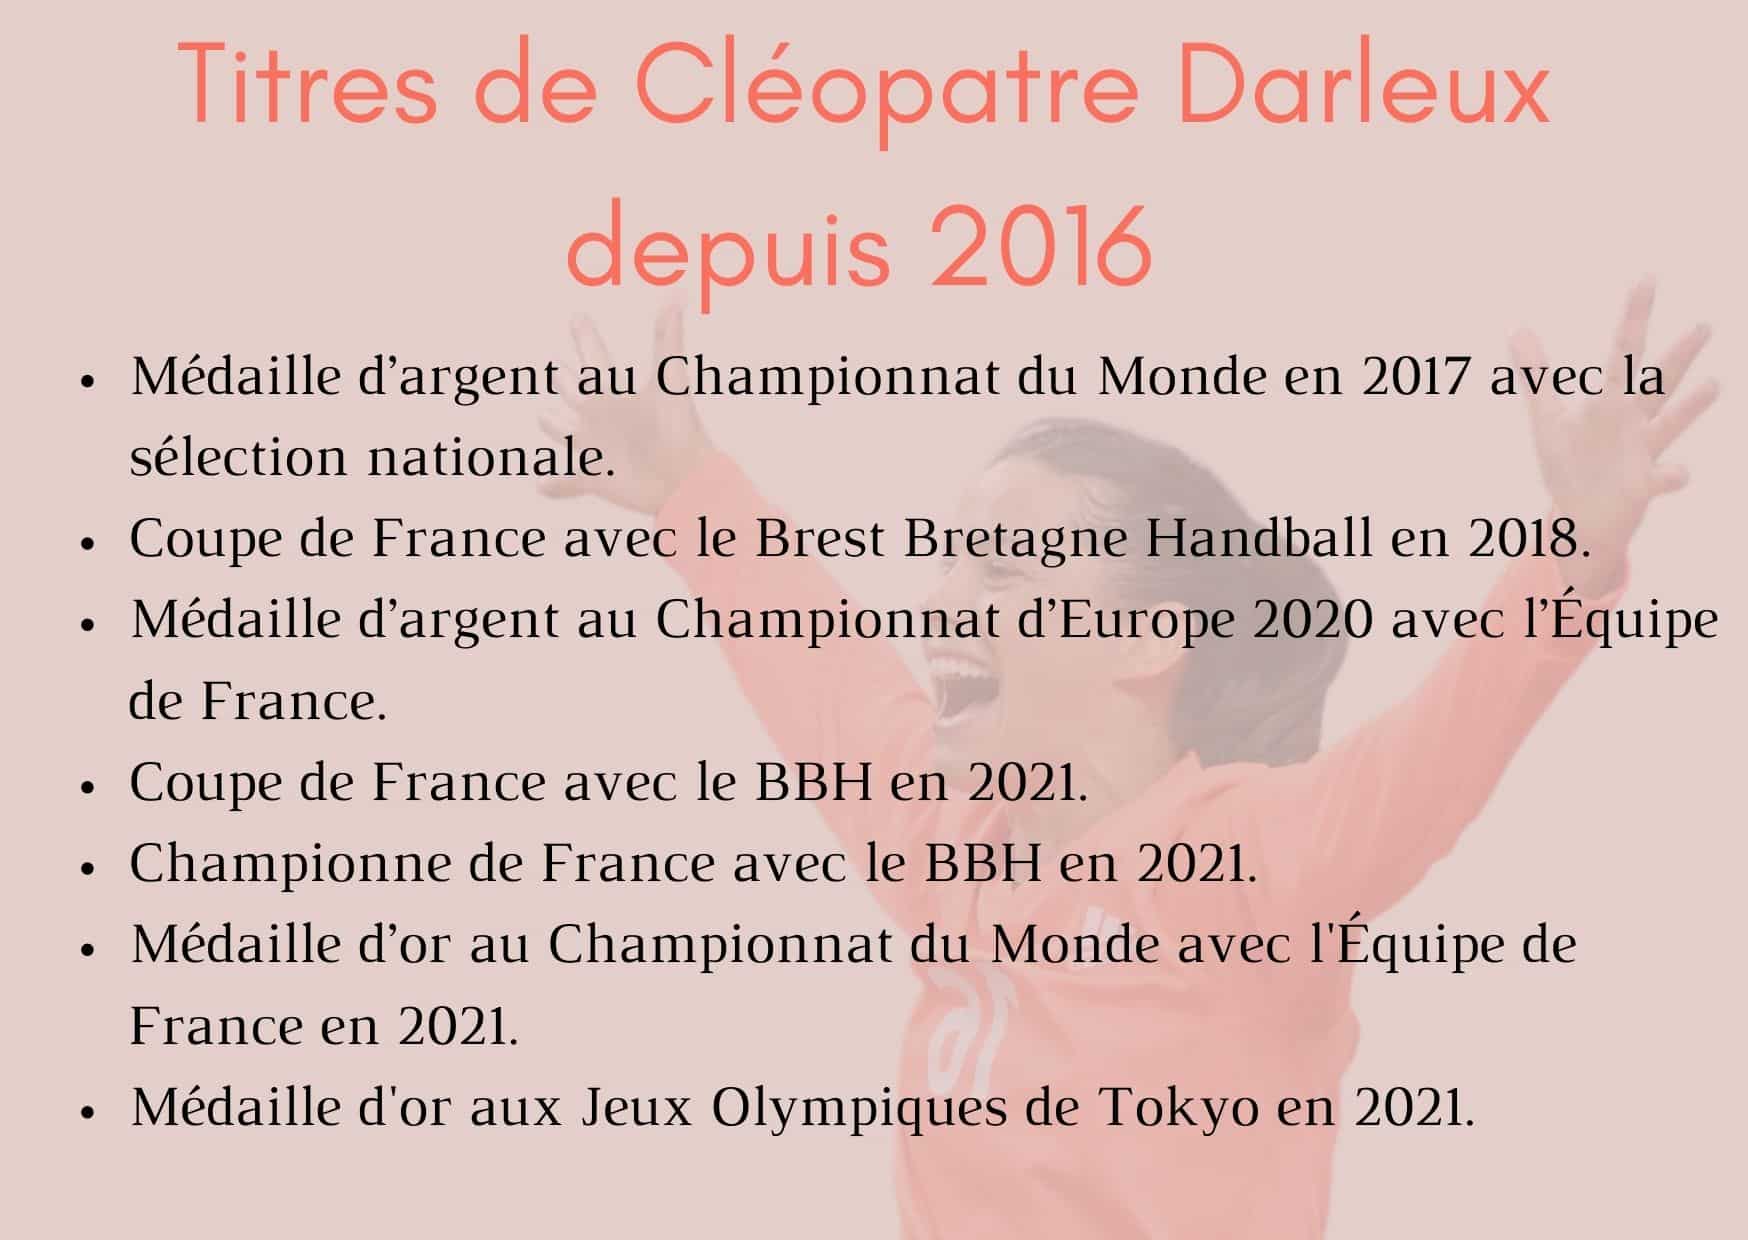 biographie sportive de Cleopatre Darleux — ses titres depuis 2016